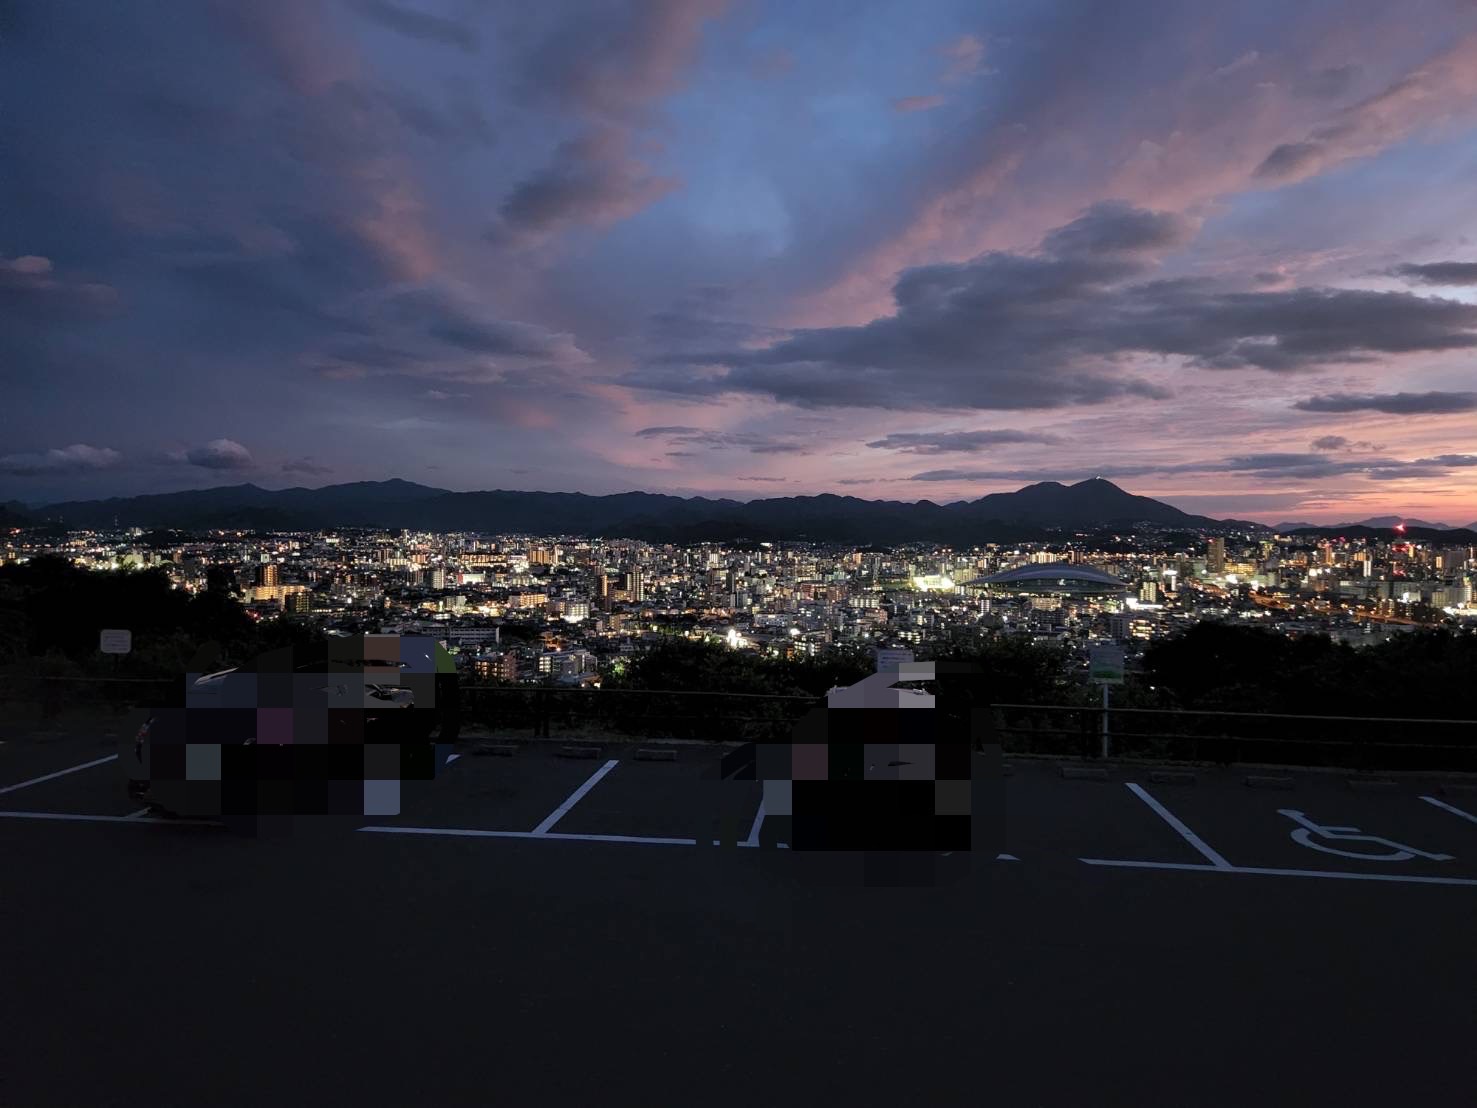 北九州市 小倉の夜景がゆっくり見たい そんな方にオススメです 望玄荘展望台に行ってきました それいゆさん Yahoo Japan クリエイターズプログラム